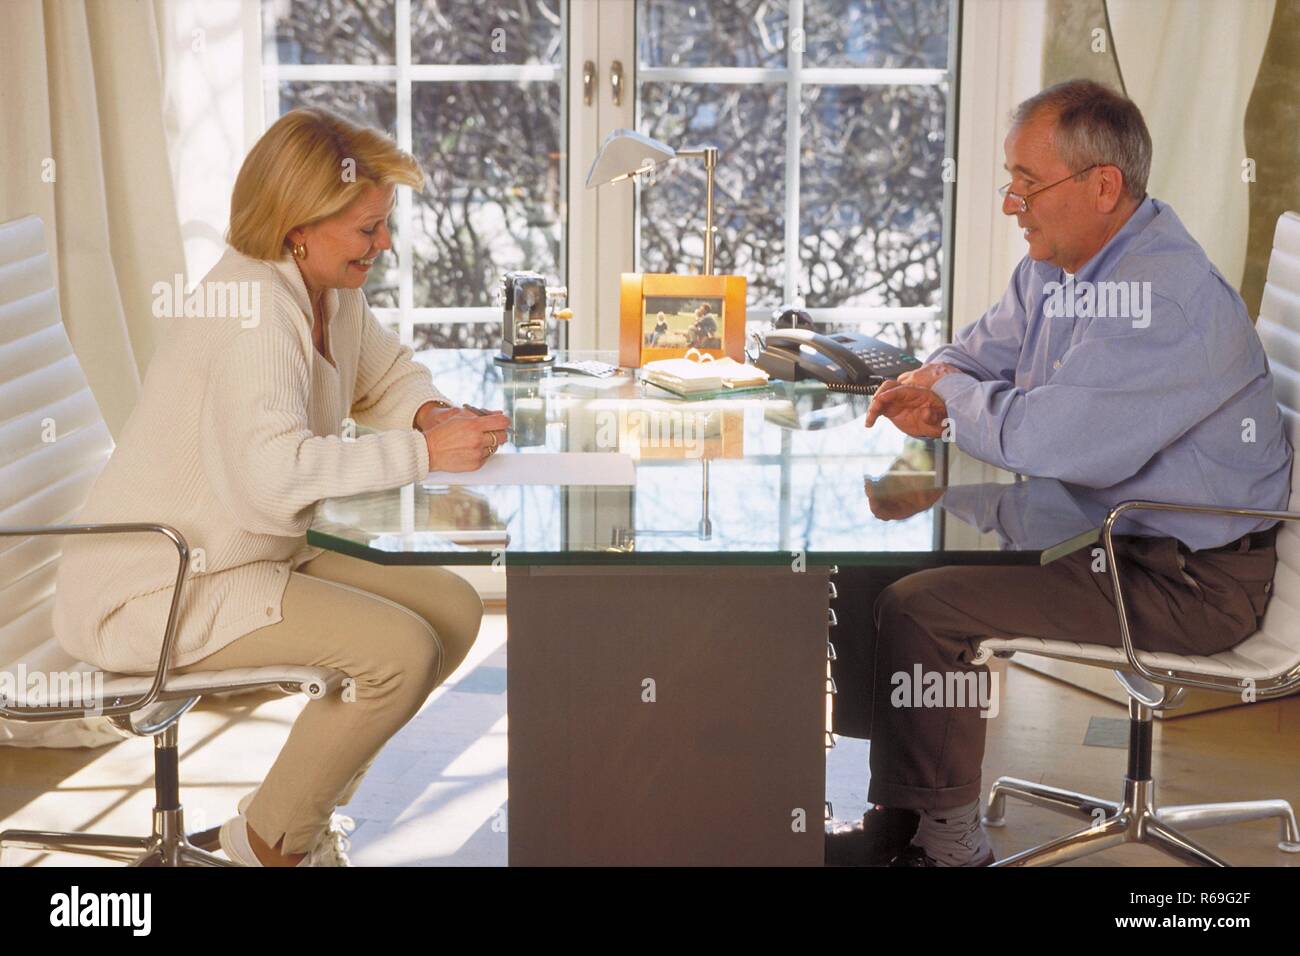 Innenraum, Ganzfigur, Profil, Seniorenpaar Mitte 60 sitzt sich am Glastisch vor dem Fenster gegenueber, die Frau macht Notizen Stock Photo